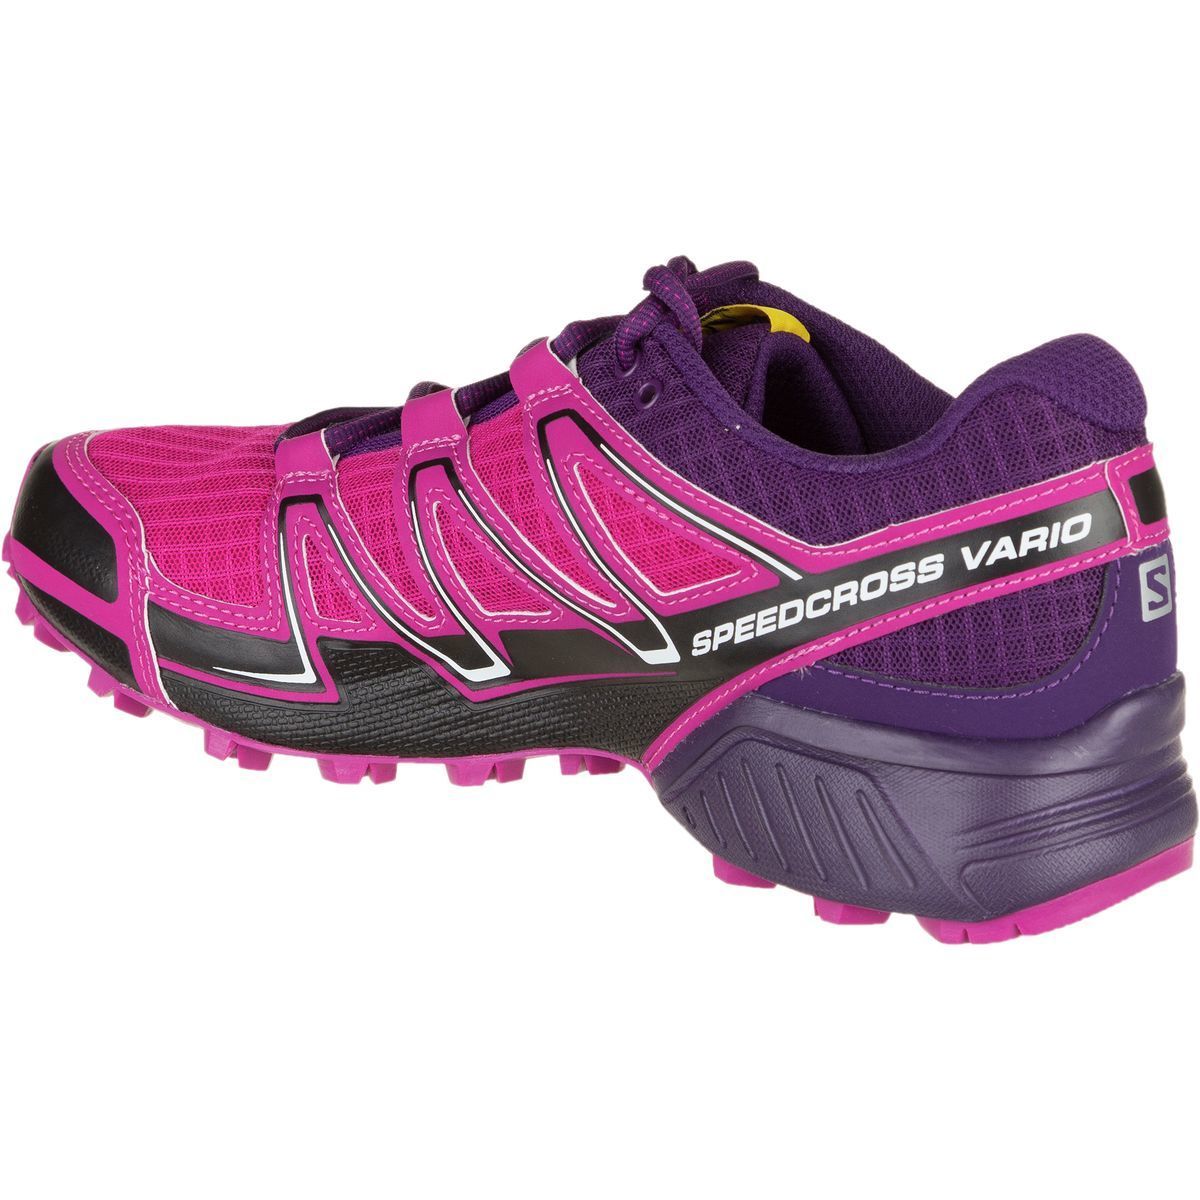 Moderator laden vonnis Salomon Speedcross Vario Trail Running Shoe - Women's - Footwear